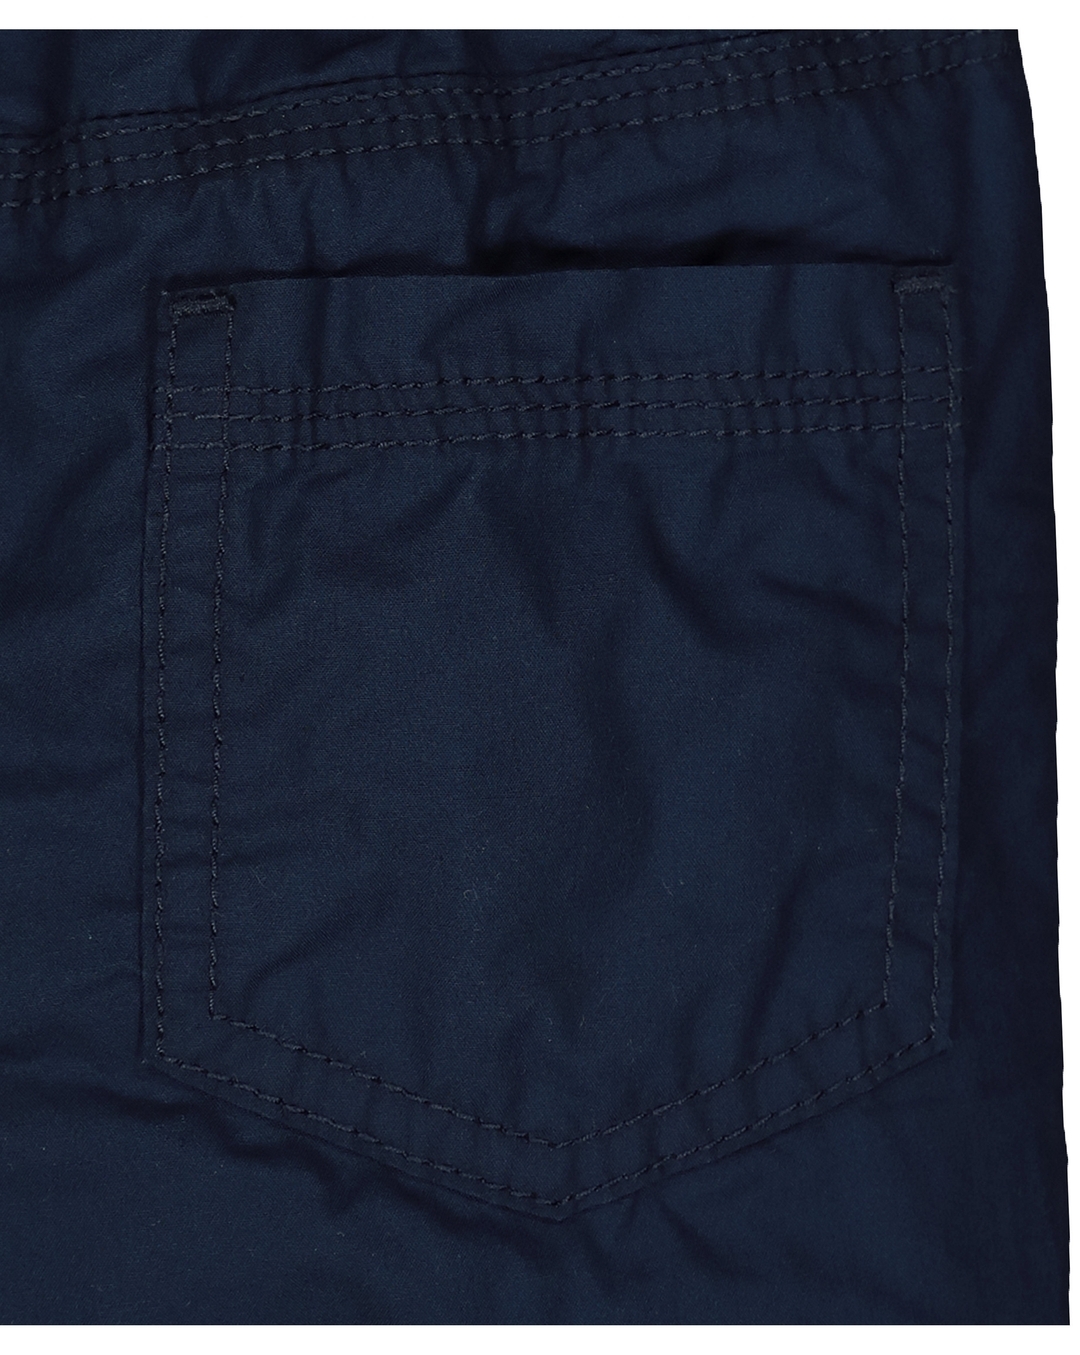 Fleet Half Lined Wool Navy Trouser Trouser+ | cwmenswear